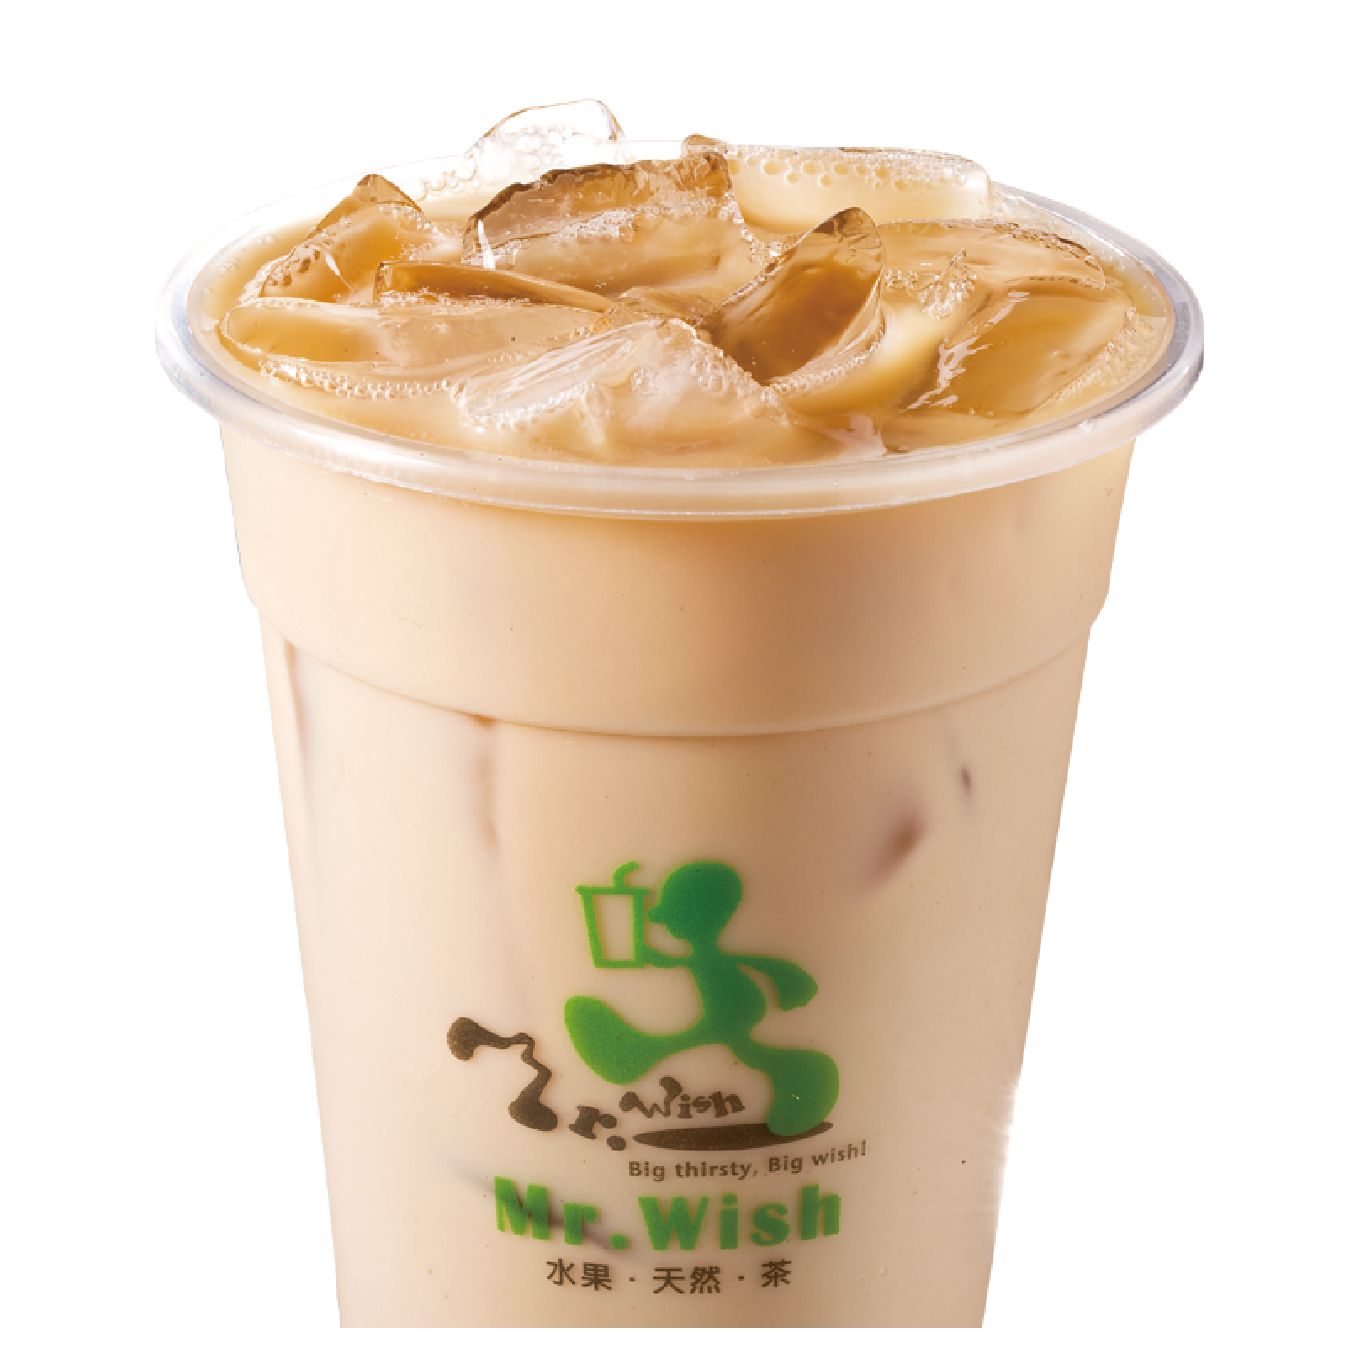 Order Oolong Milk Tea food online from Mr. Wish store, Bellevue on bringmethat.com